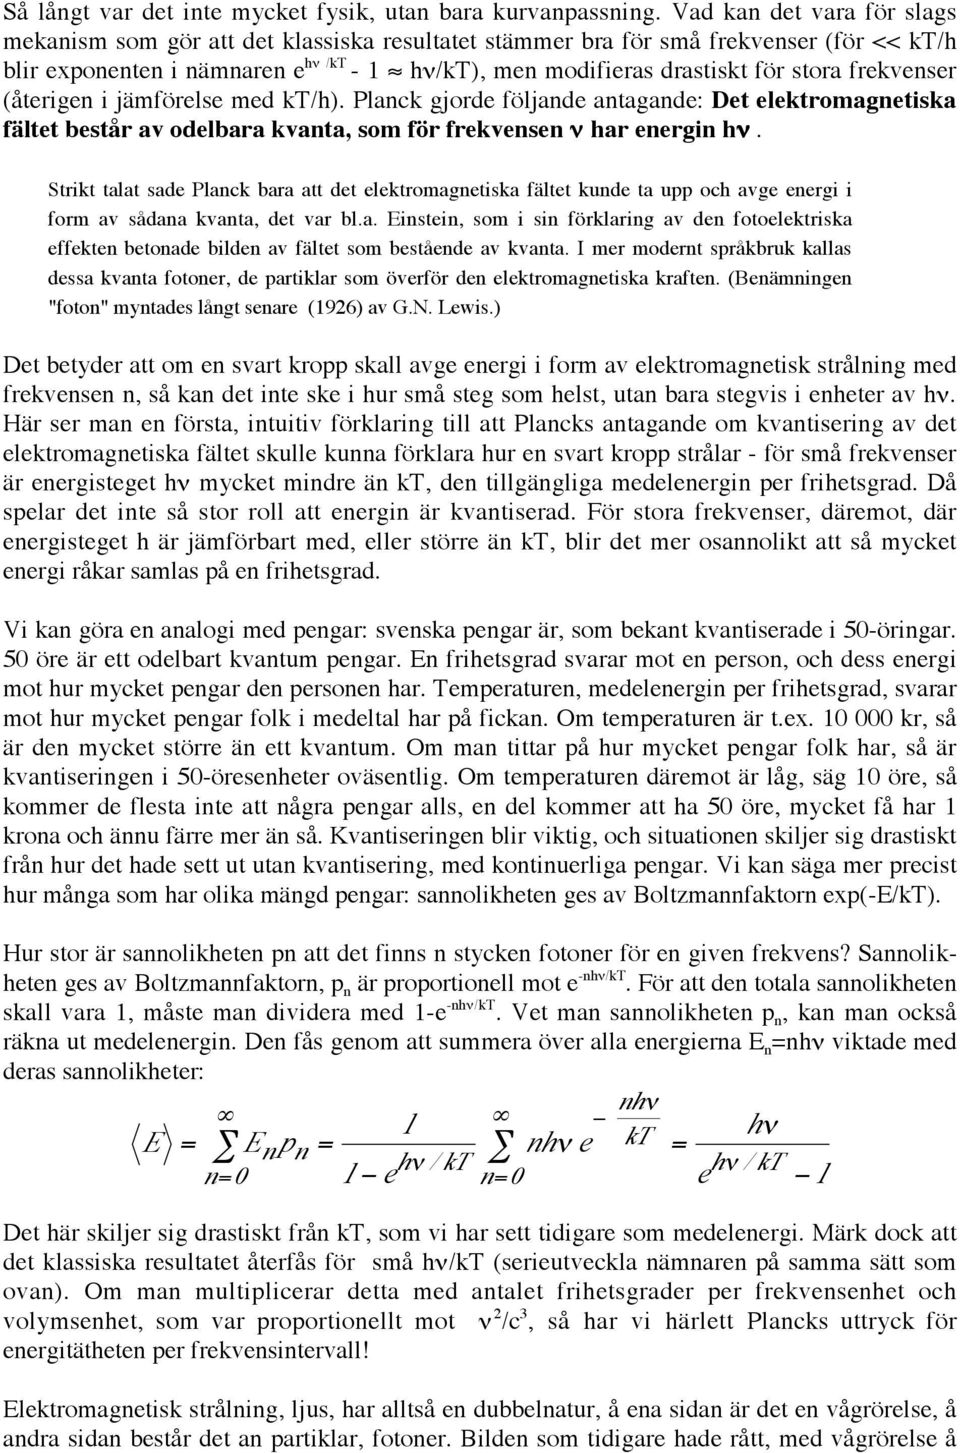 frekvenser (återigen i jämförelse med kt/h). Planck gjorde följande antagande: Det elektromagnetiska fältet består av odelbara kvanta, som för frekvensen ν har energin hν.